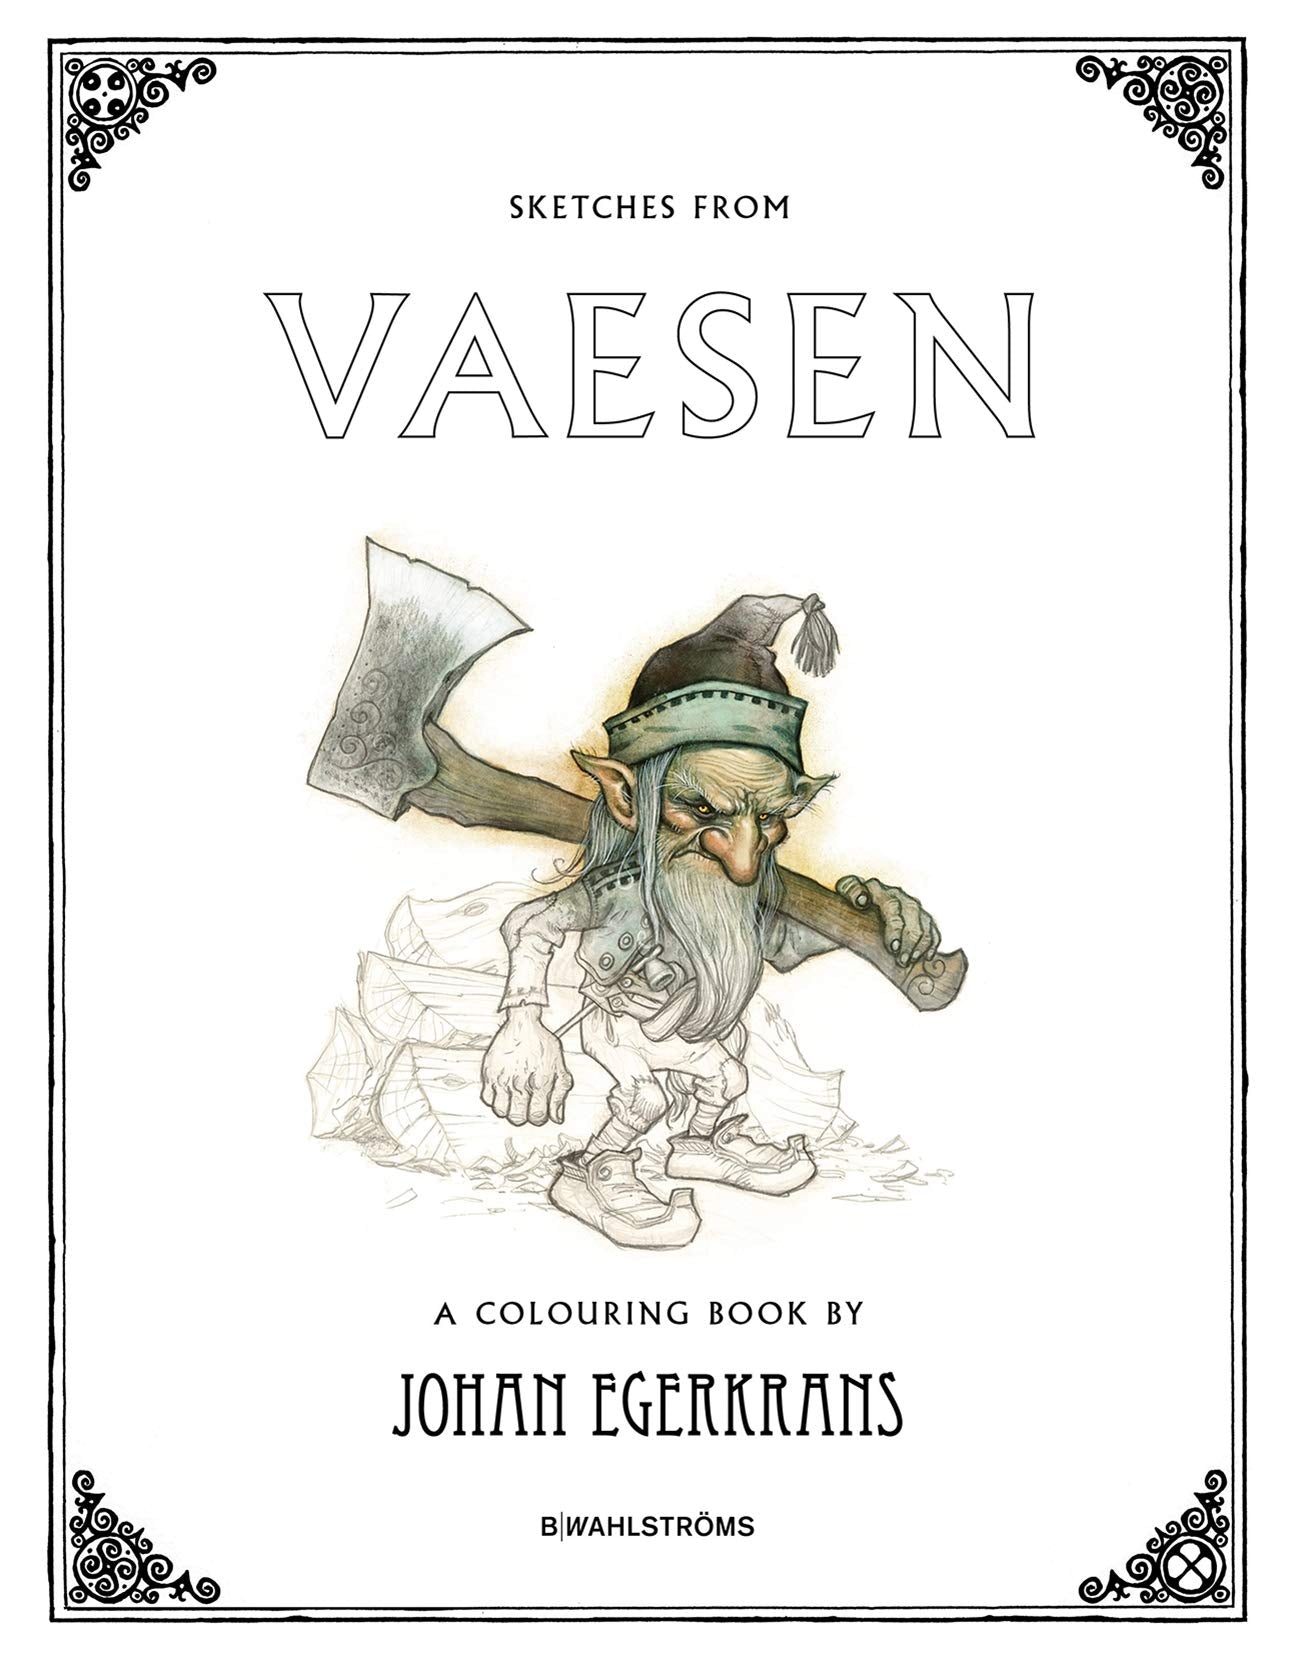 Sketches for Vaesen: A Colouring Book, by Johan Egerkrans